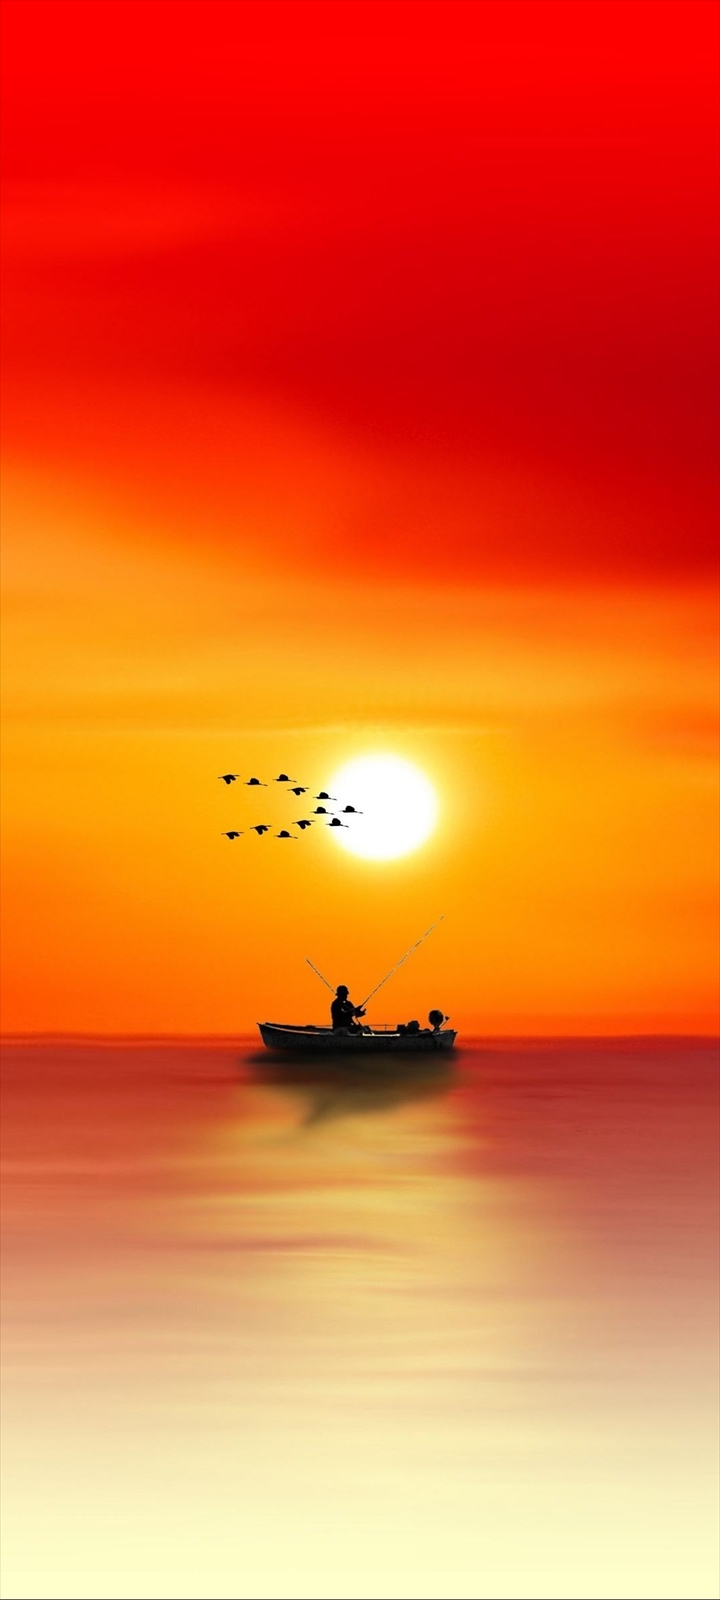 ボートで釣りをする人と渡り鳥と夕日 Galaxy A32 5g Androidスマホ壁紙 待ち受け スマラン